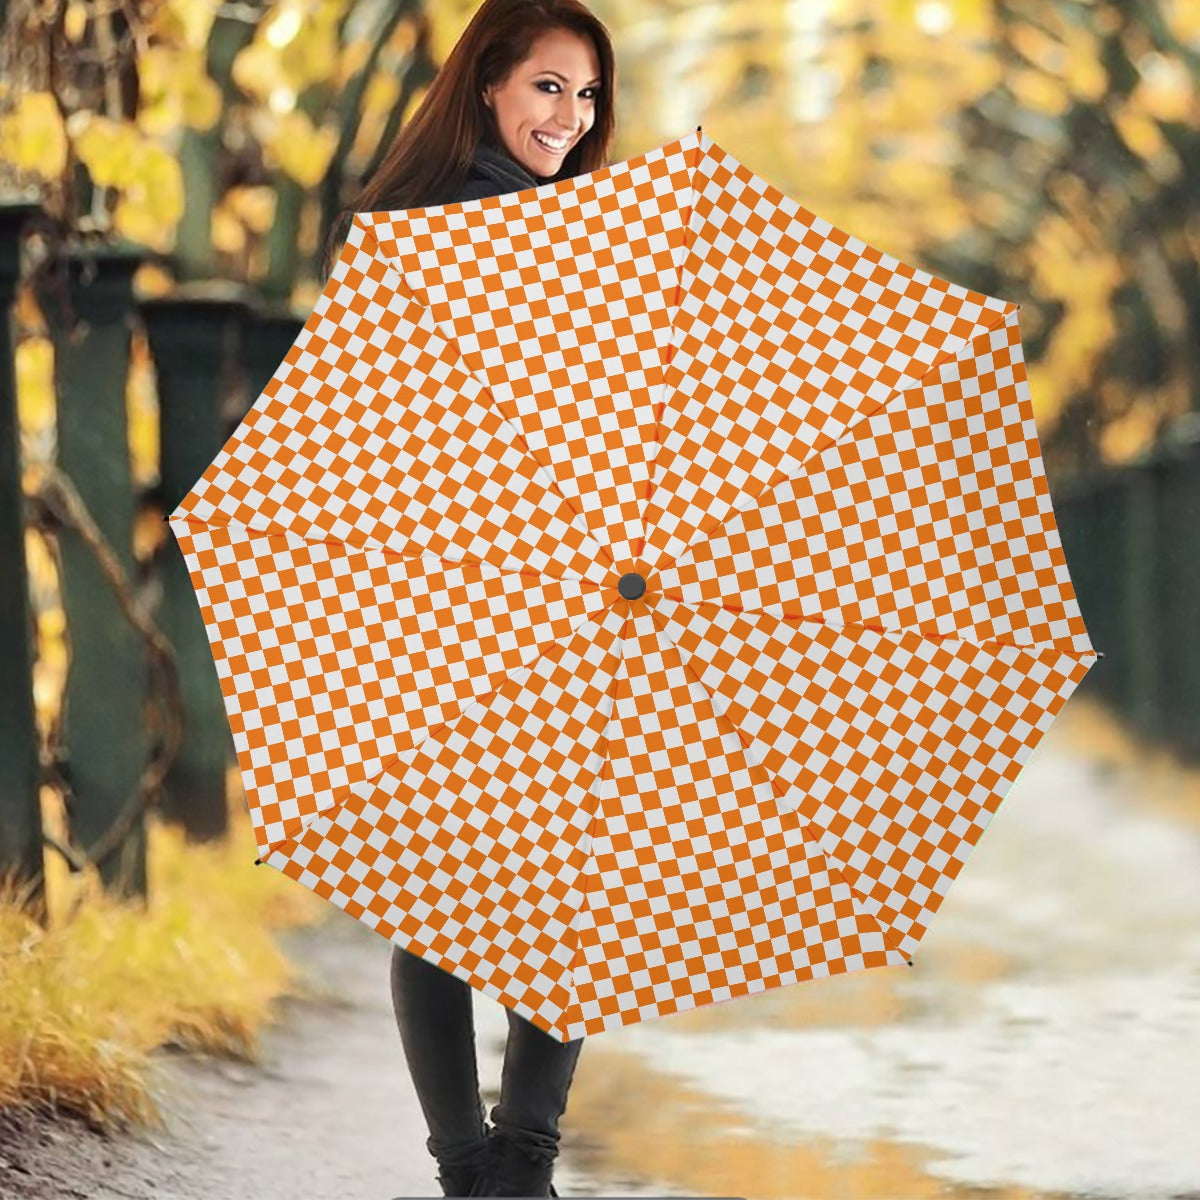 Checkerboard Umbrella